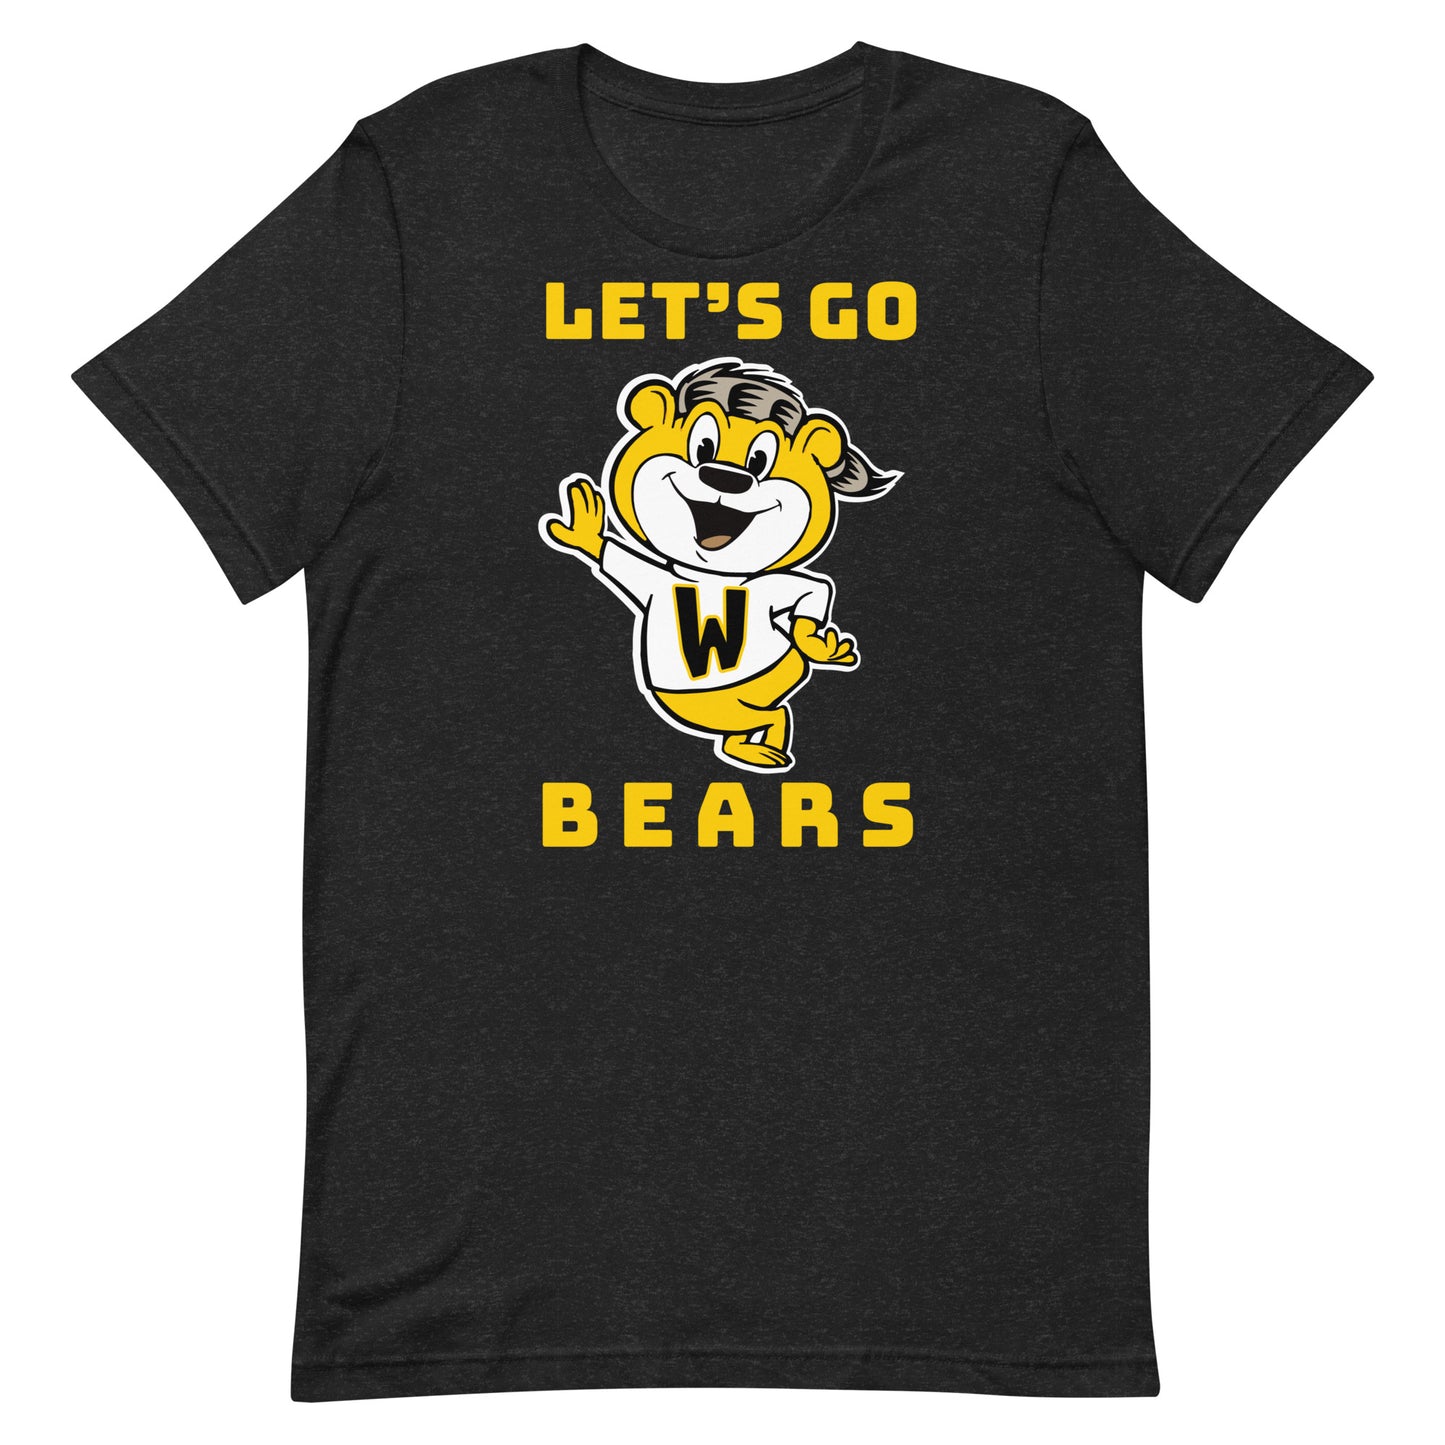 LET'S GO BEARS - BELLA+CANVAS - Unisex t-shirt